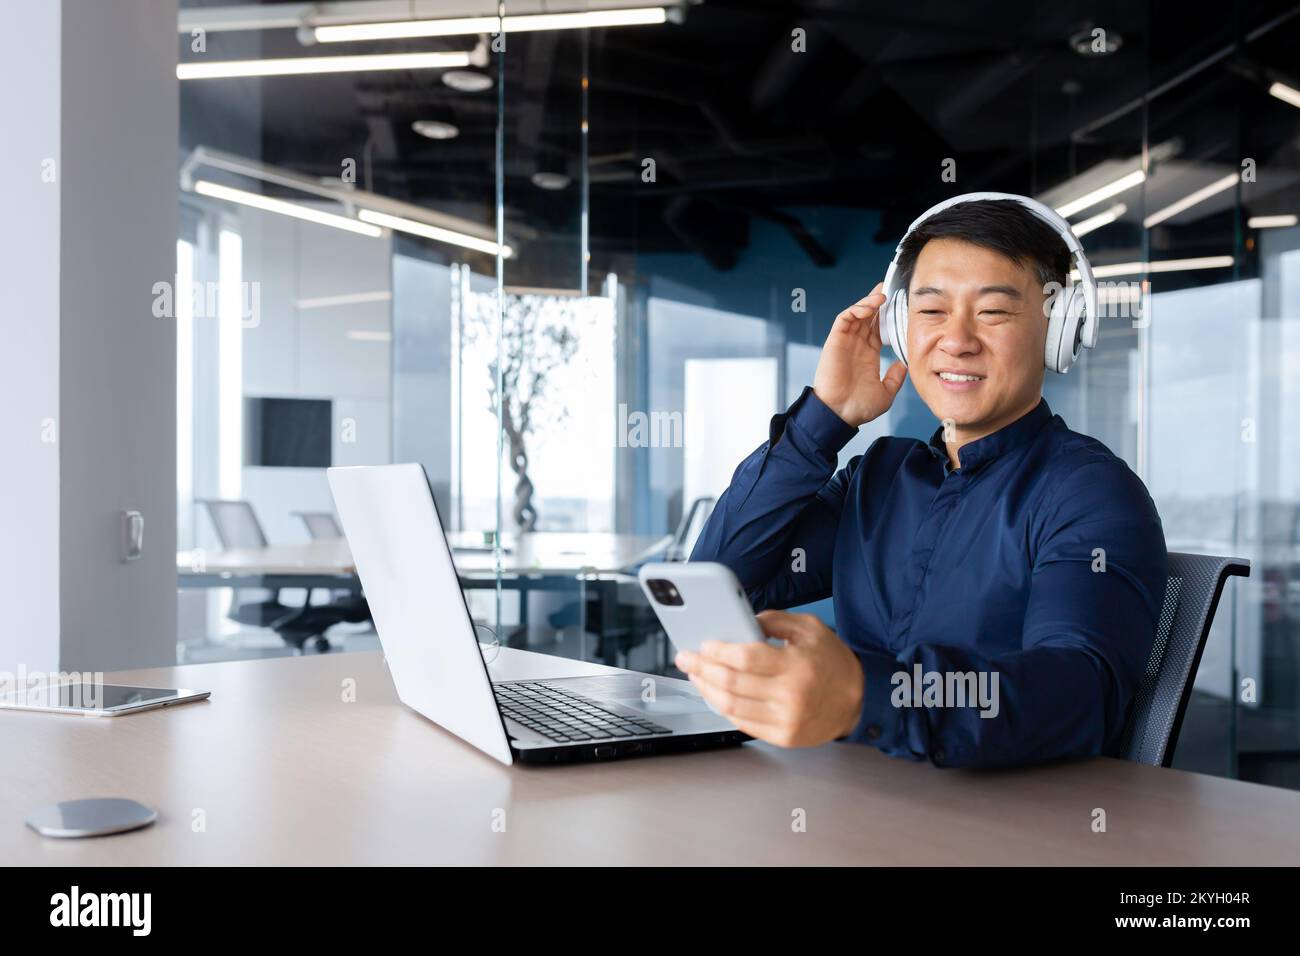 Homme d'affaires à l'écoute de musique et de podcast sur le lieu de travail, homme asiatique souriant et heureux d'utiliser un ordinateur portable au travail, homme avec casque et téléphone à l'écoute de la radio en ligne dans le bureau. Banque D'Images